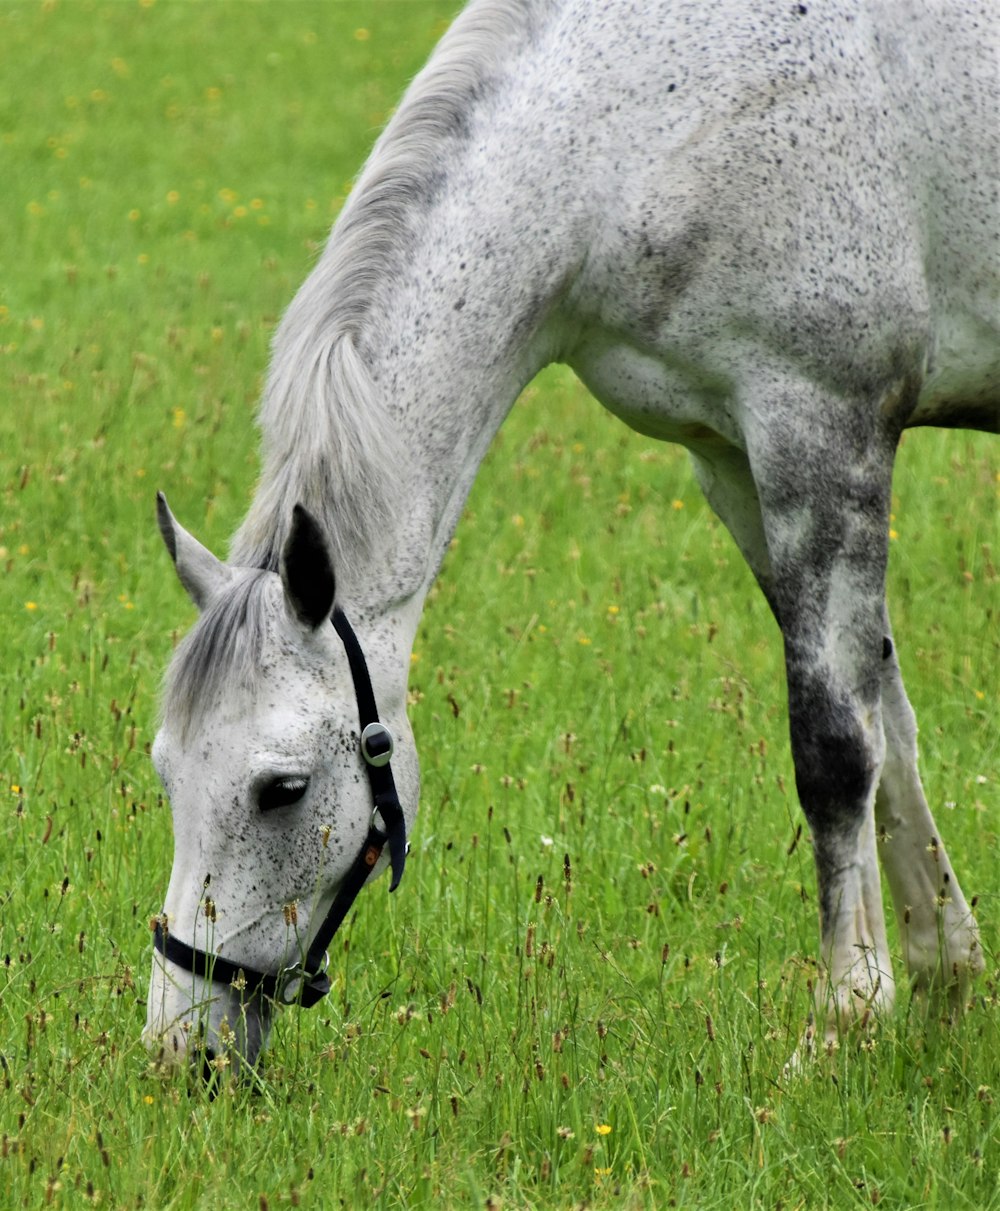 caballo blanco comiendo hierba en el campo de hierba verde durante el día